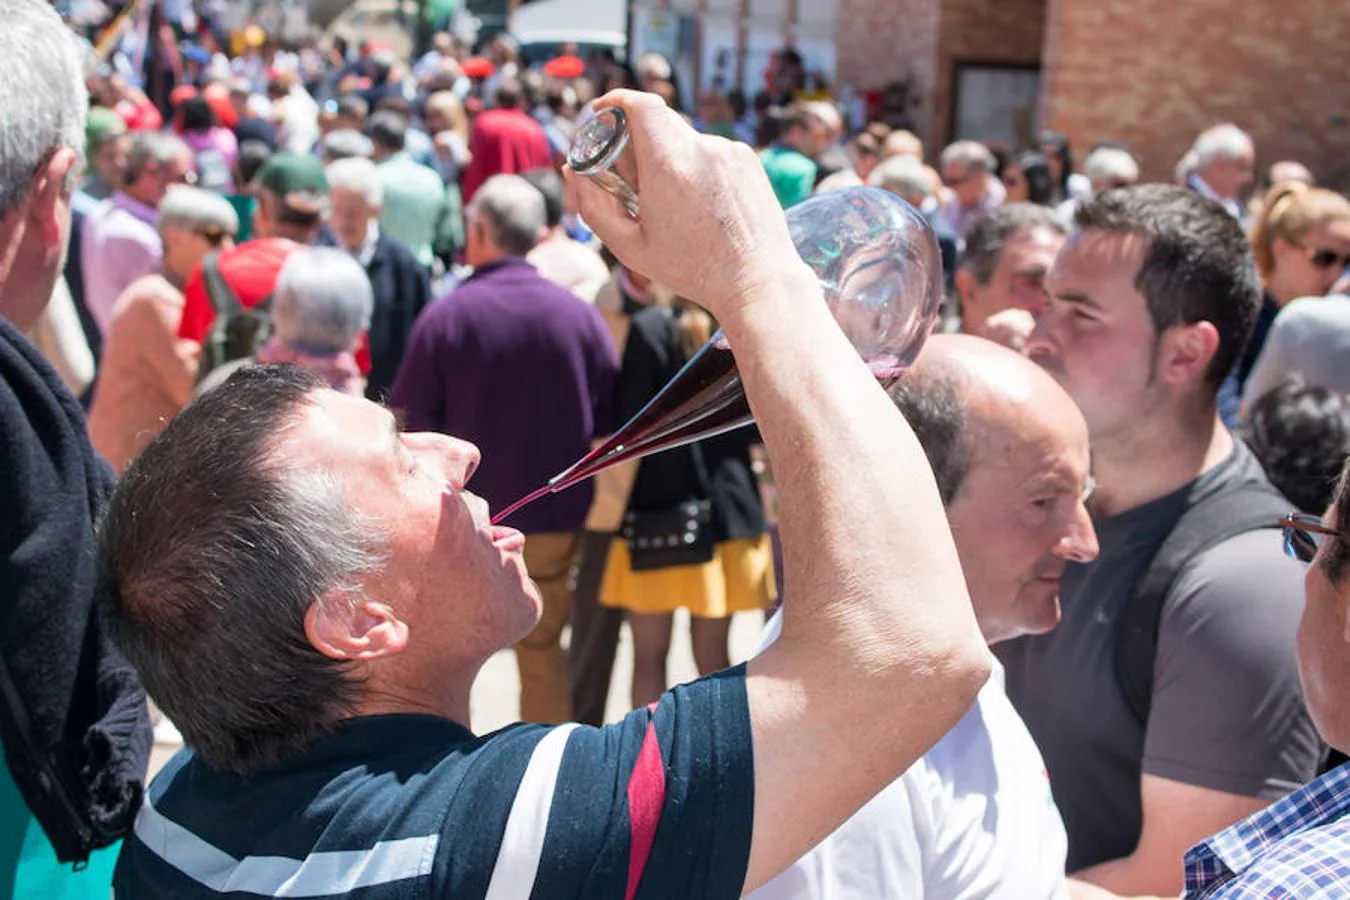 Gallinero de Rioja apunta a verano con su romería, la primera que se realiza tras las fiestas patronales de Santo Domingo. Después seguirán otras dos, ambas con destino a la ermita de Las Abejas.